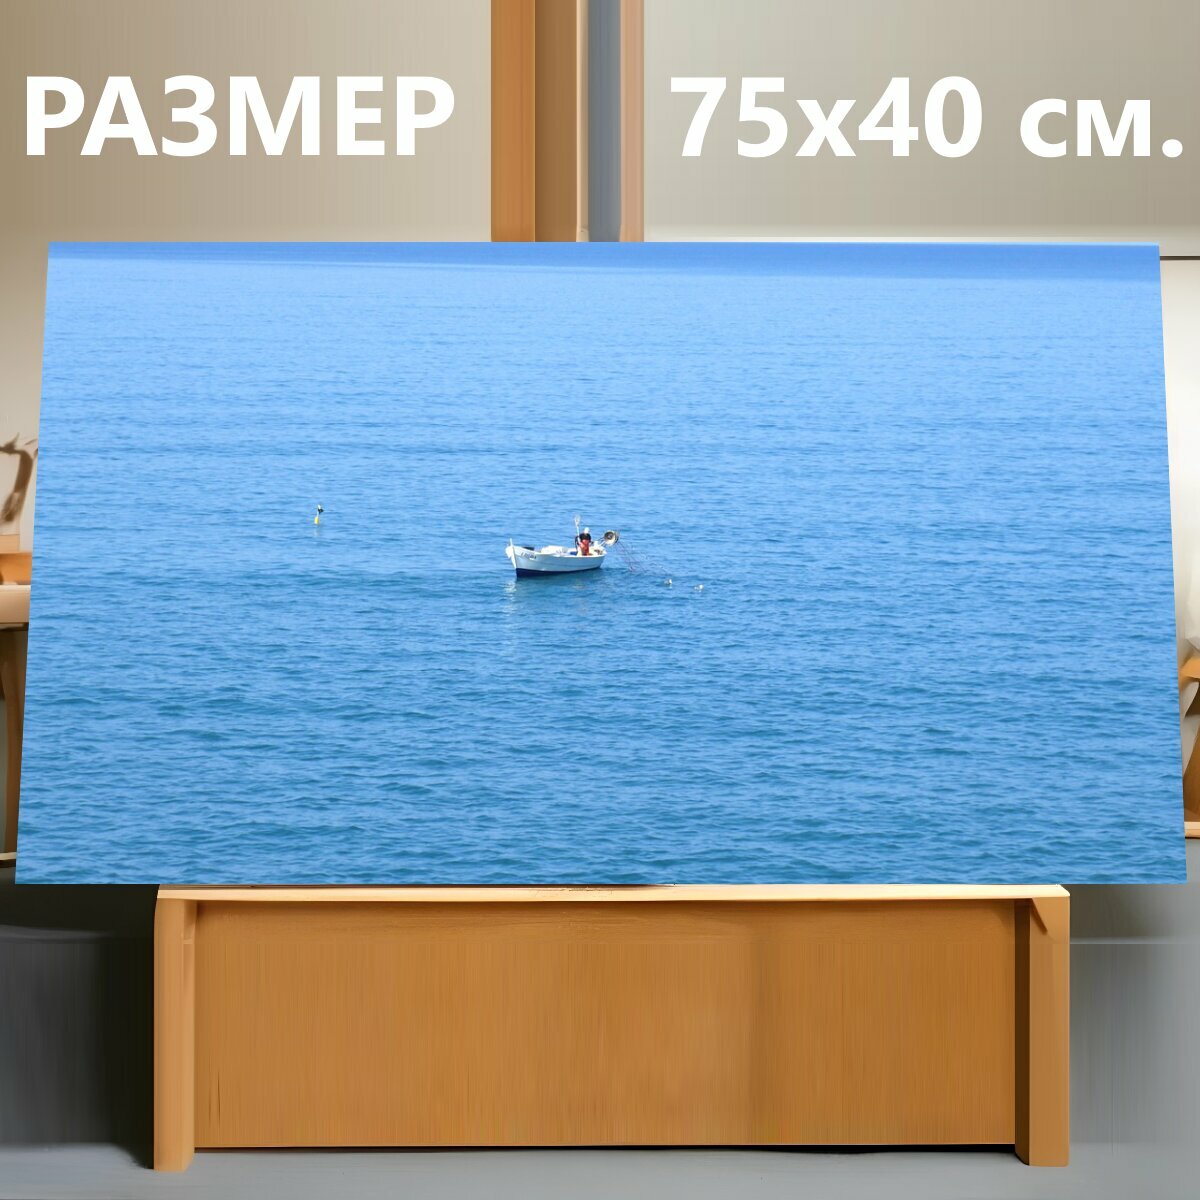 Картина на холсте "Лодка, море, панорама" на подрамнике 75х40 см. для интерьера